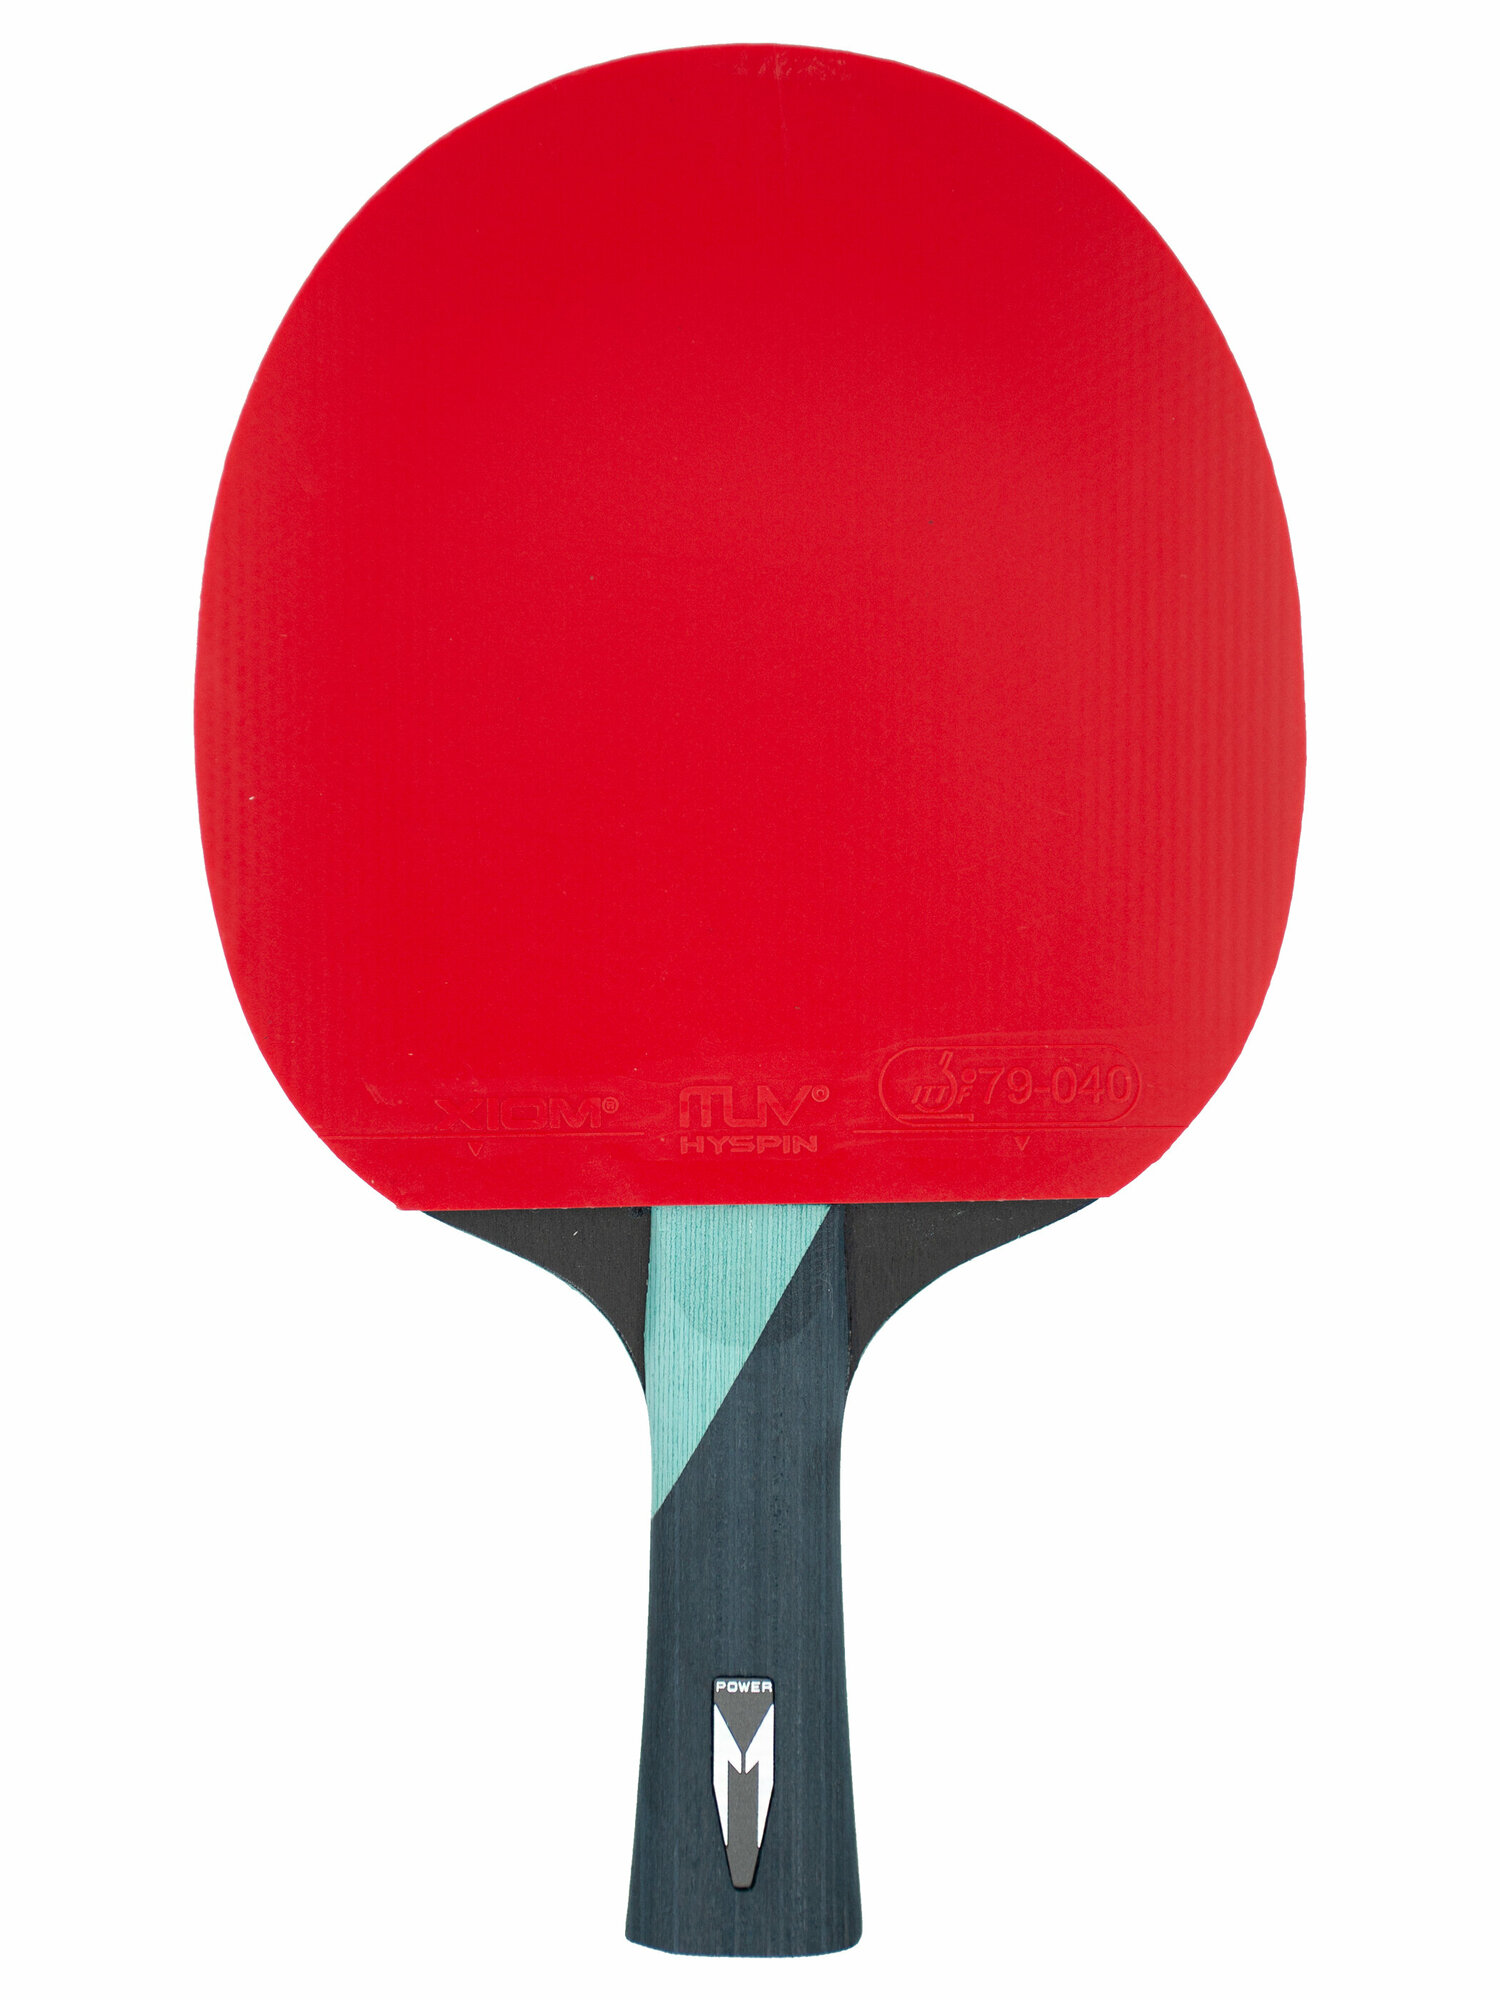 Ракетка для настольного тенниса XIOM 4.0S